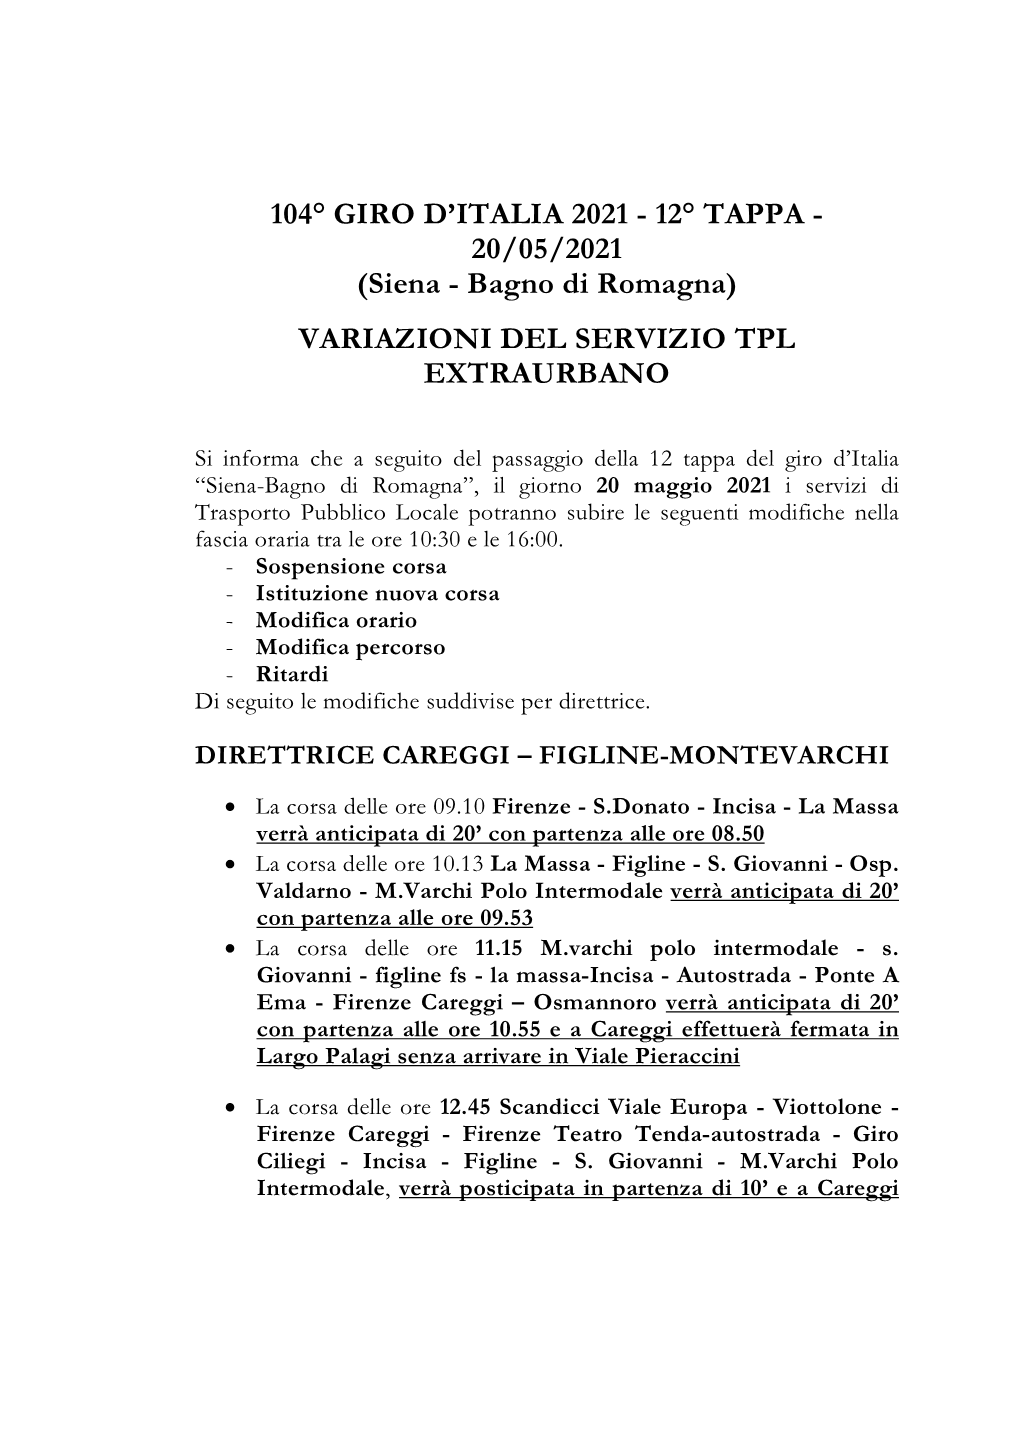 12° TAPPA - 20/05/2021 (Siena - Bagno Di Romagna) VARIAZIONI DEL SERVIZIO TPL EXTRAURBANO